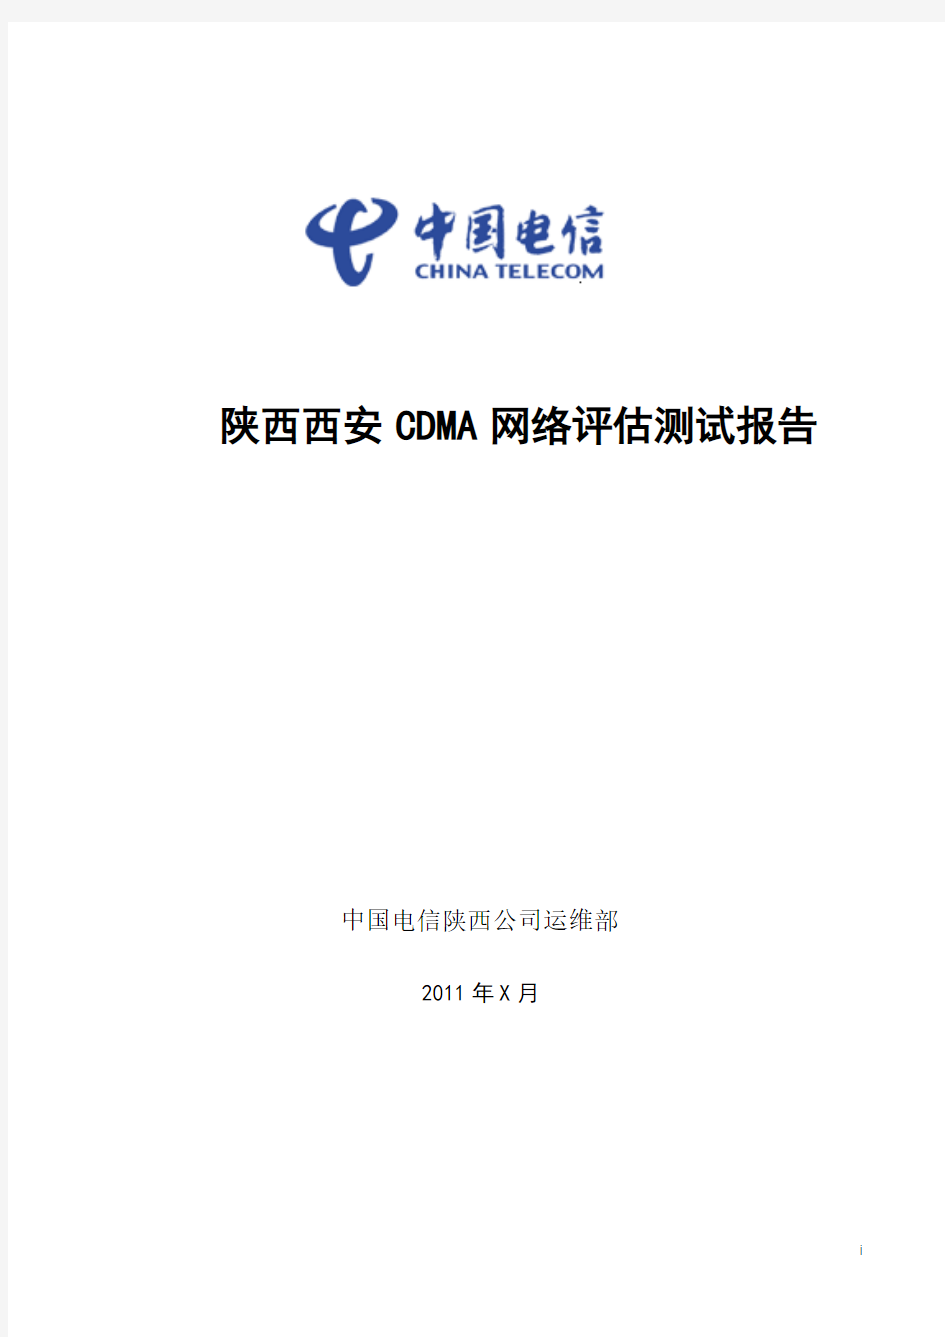 2011年中国电信陕西CDMA网络DTCQT测试分析报告-模板